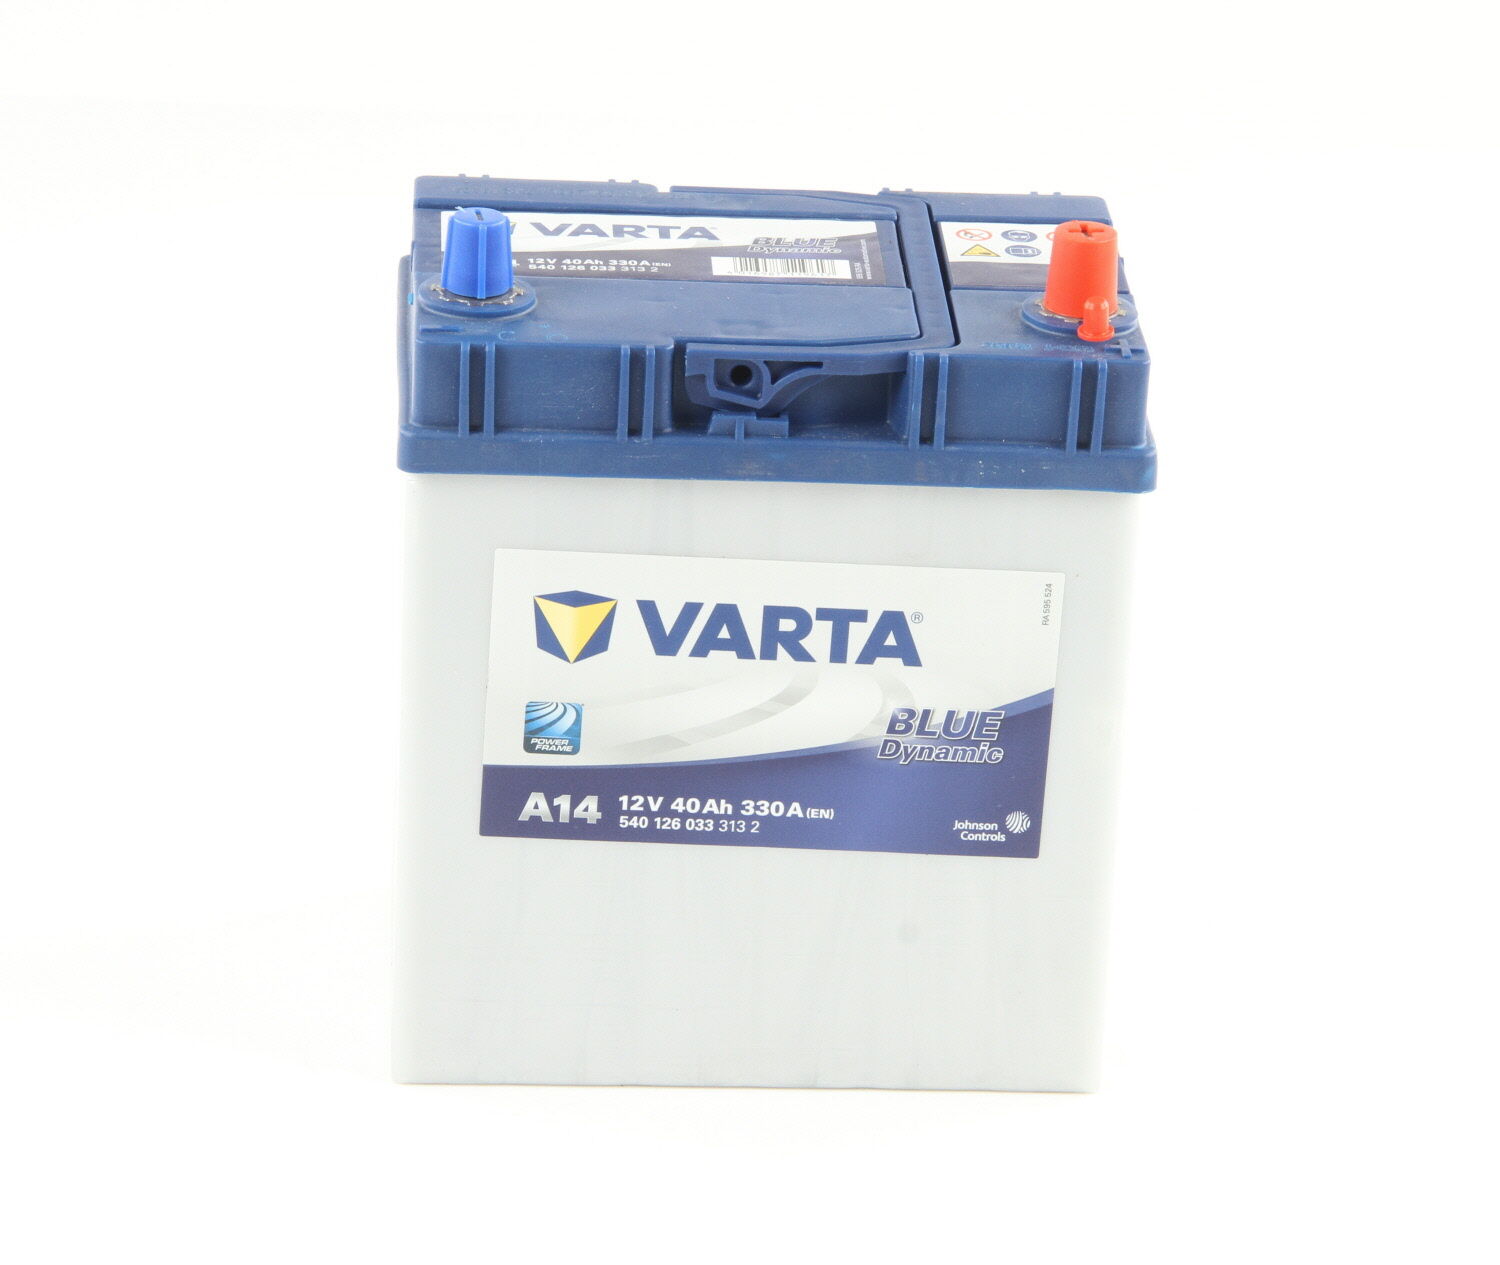 Varta Batería 330.0 A 40.0 Ah 12.0 V Performance (Ref: 5401260333132)